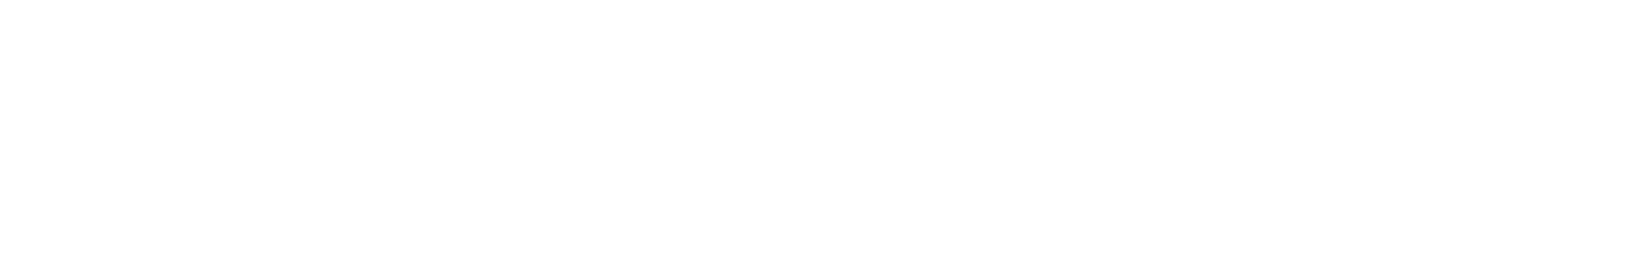 LACOG-GBECAM 2021